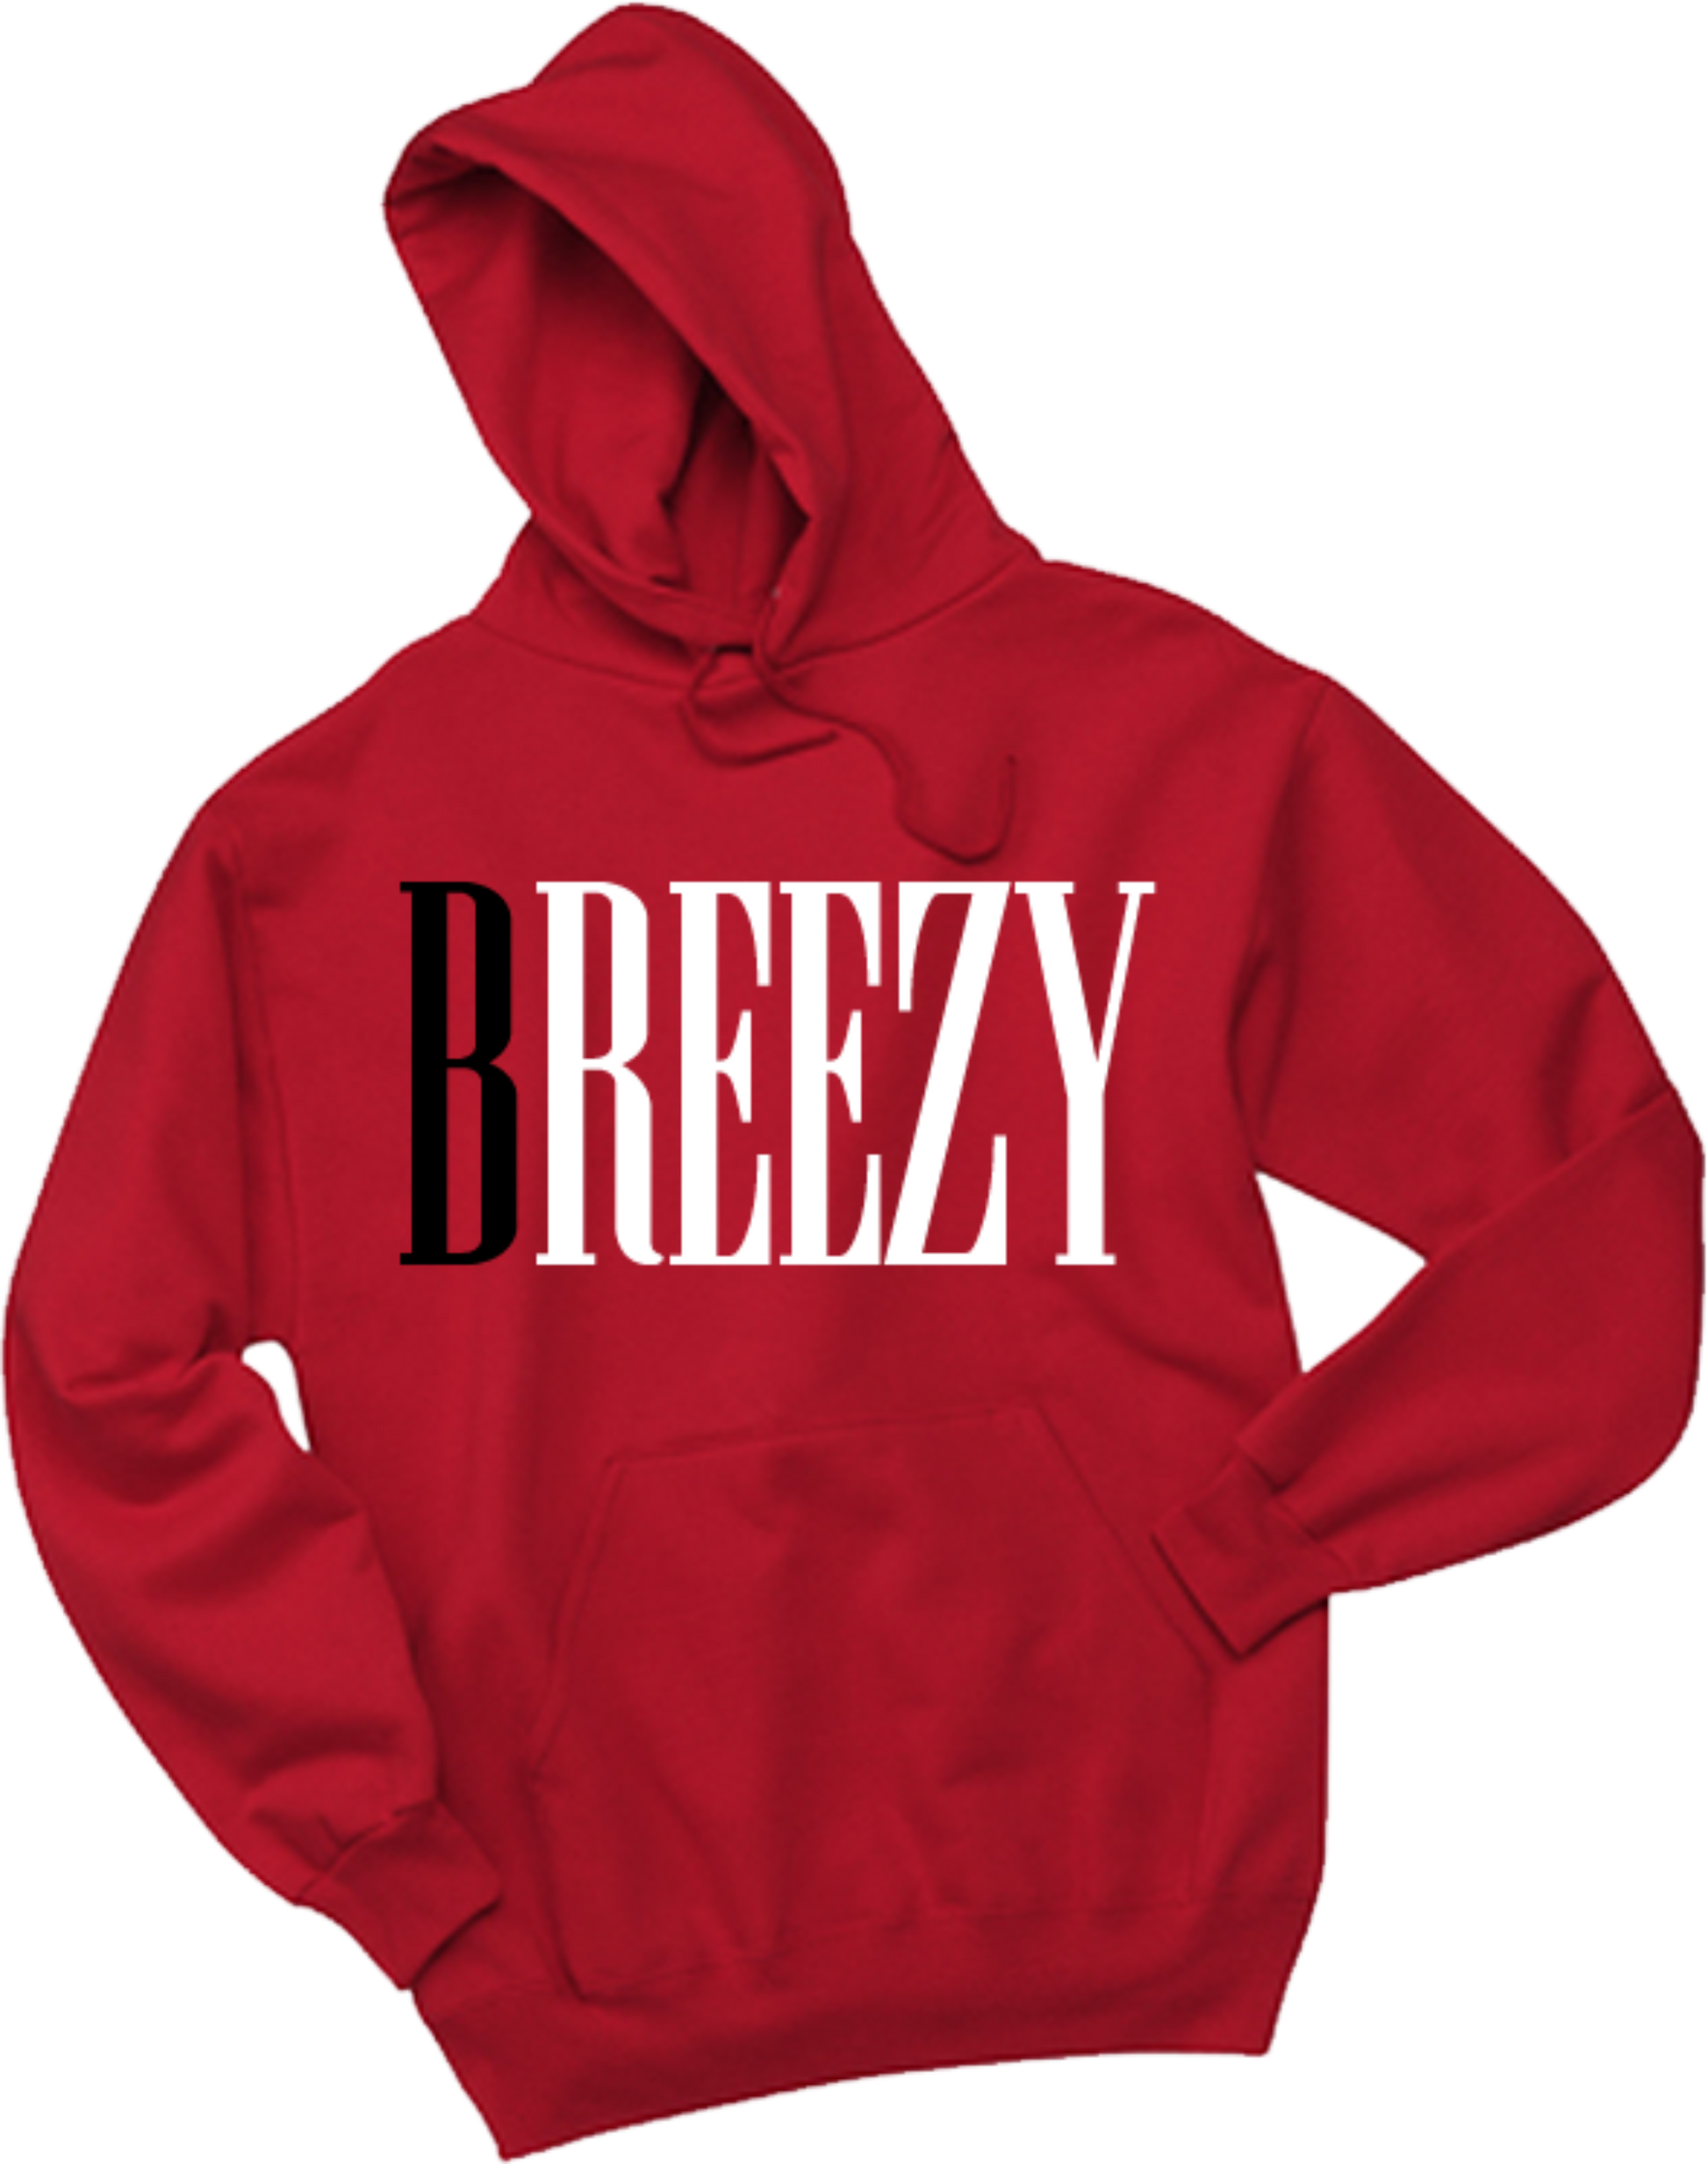 Red Breezy Hoodie - Breezy Season 